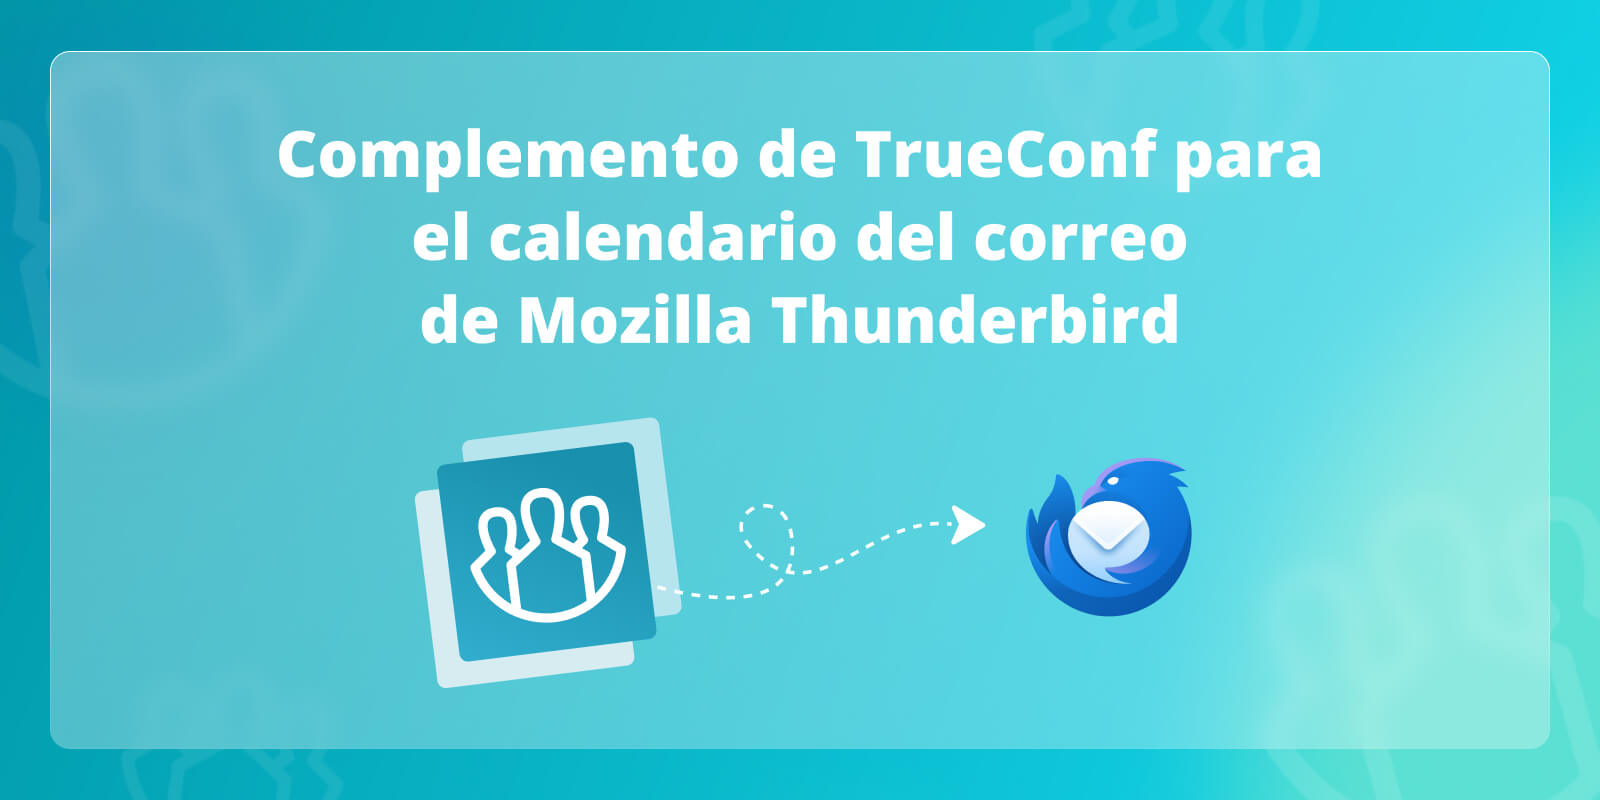 Complemento de TrueConf para el calendario del correo de Mozilla Thunderbird 5